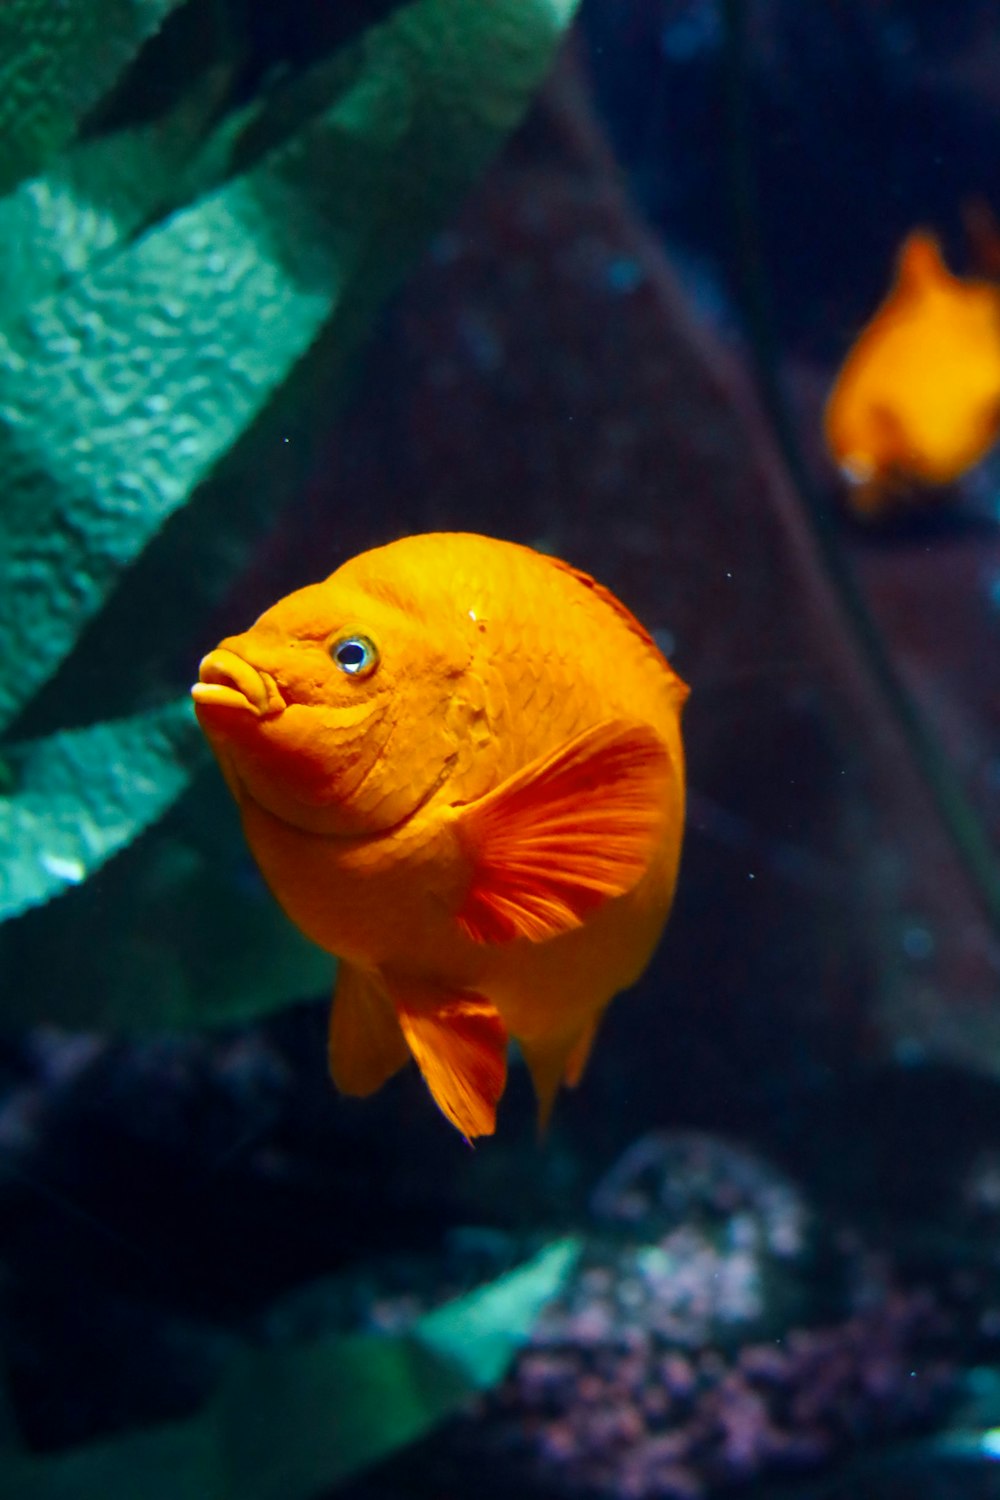 a close up of a fish in an aquarium